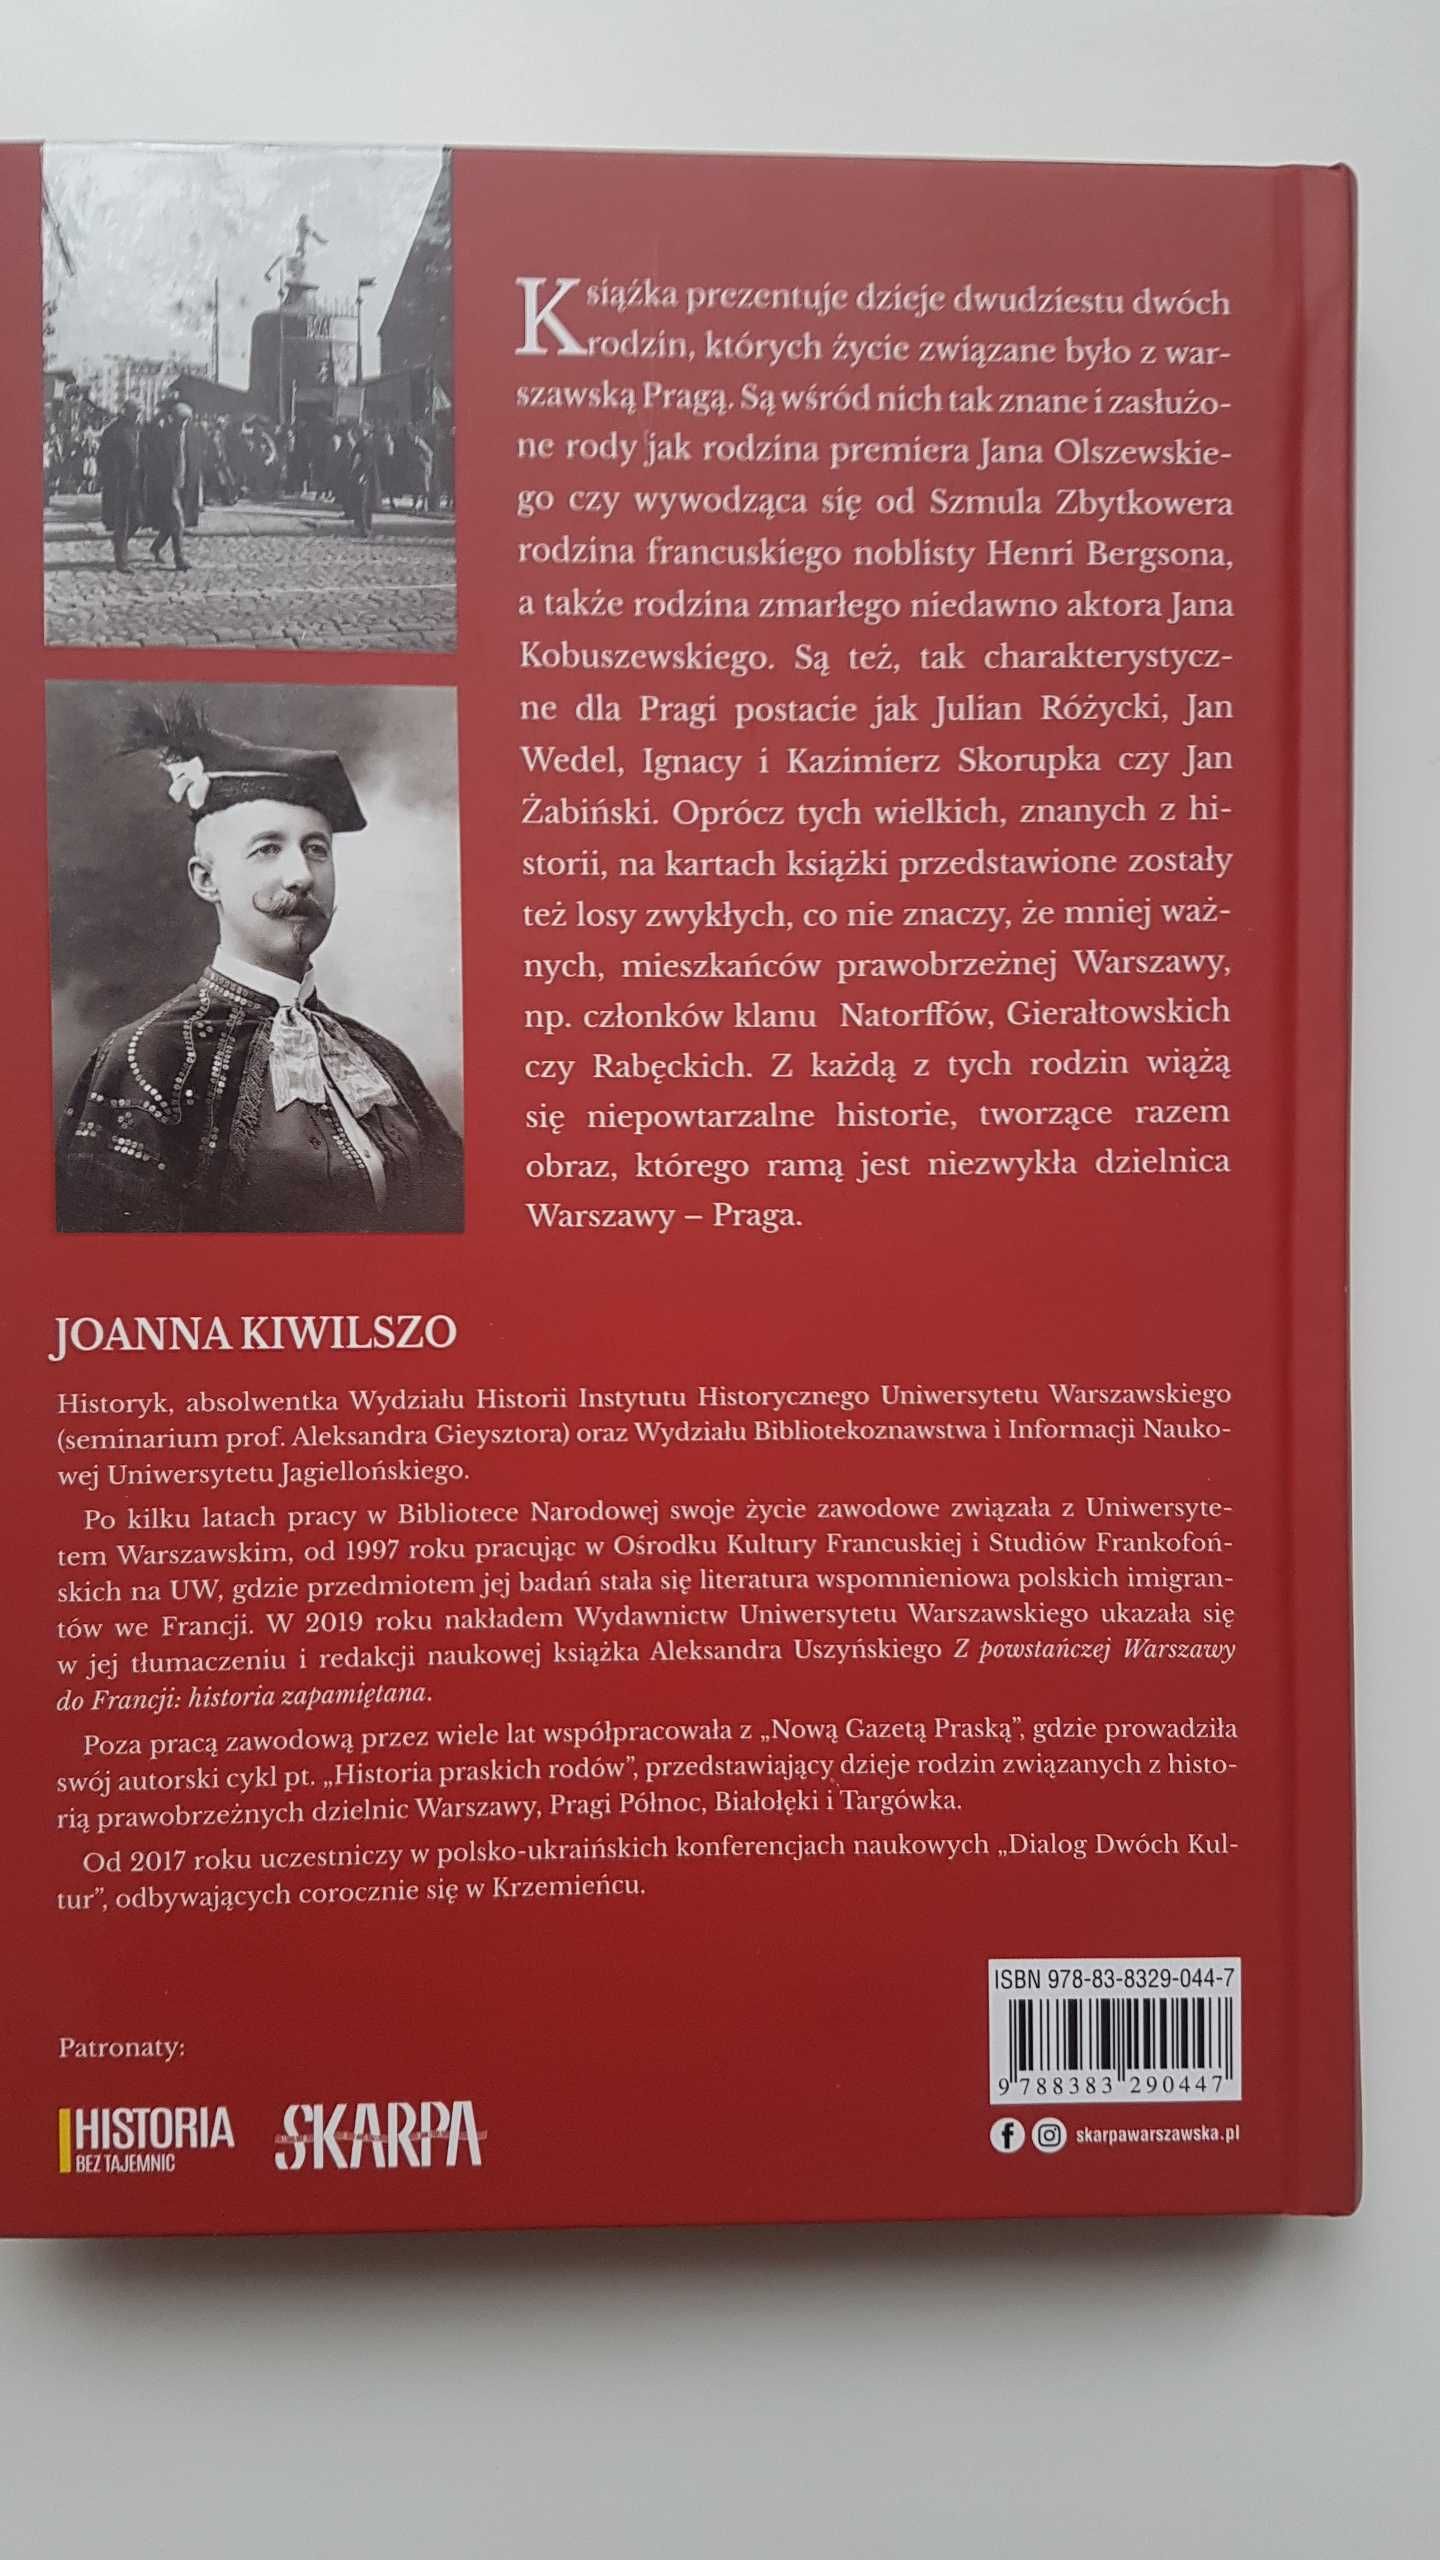 Historia Pragi Życiorysami Pisana - Joanna Kiwilszo